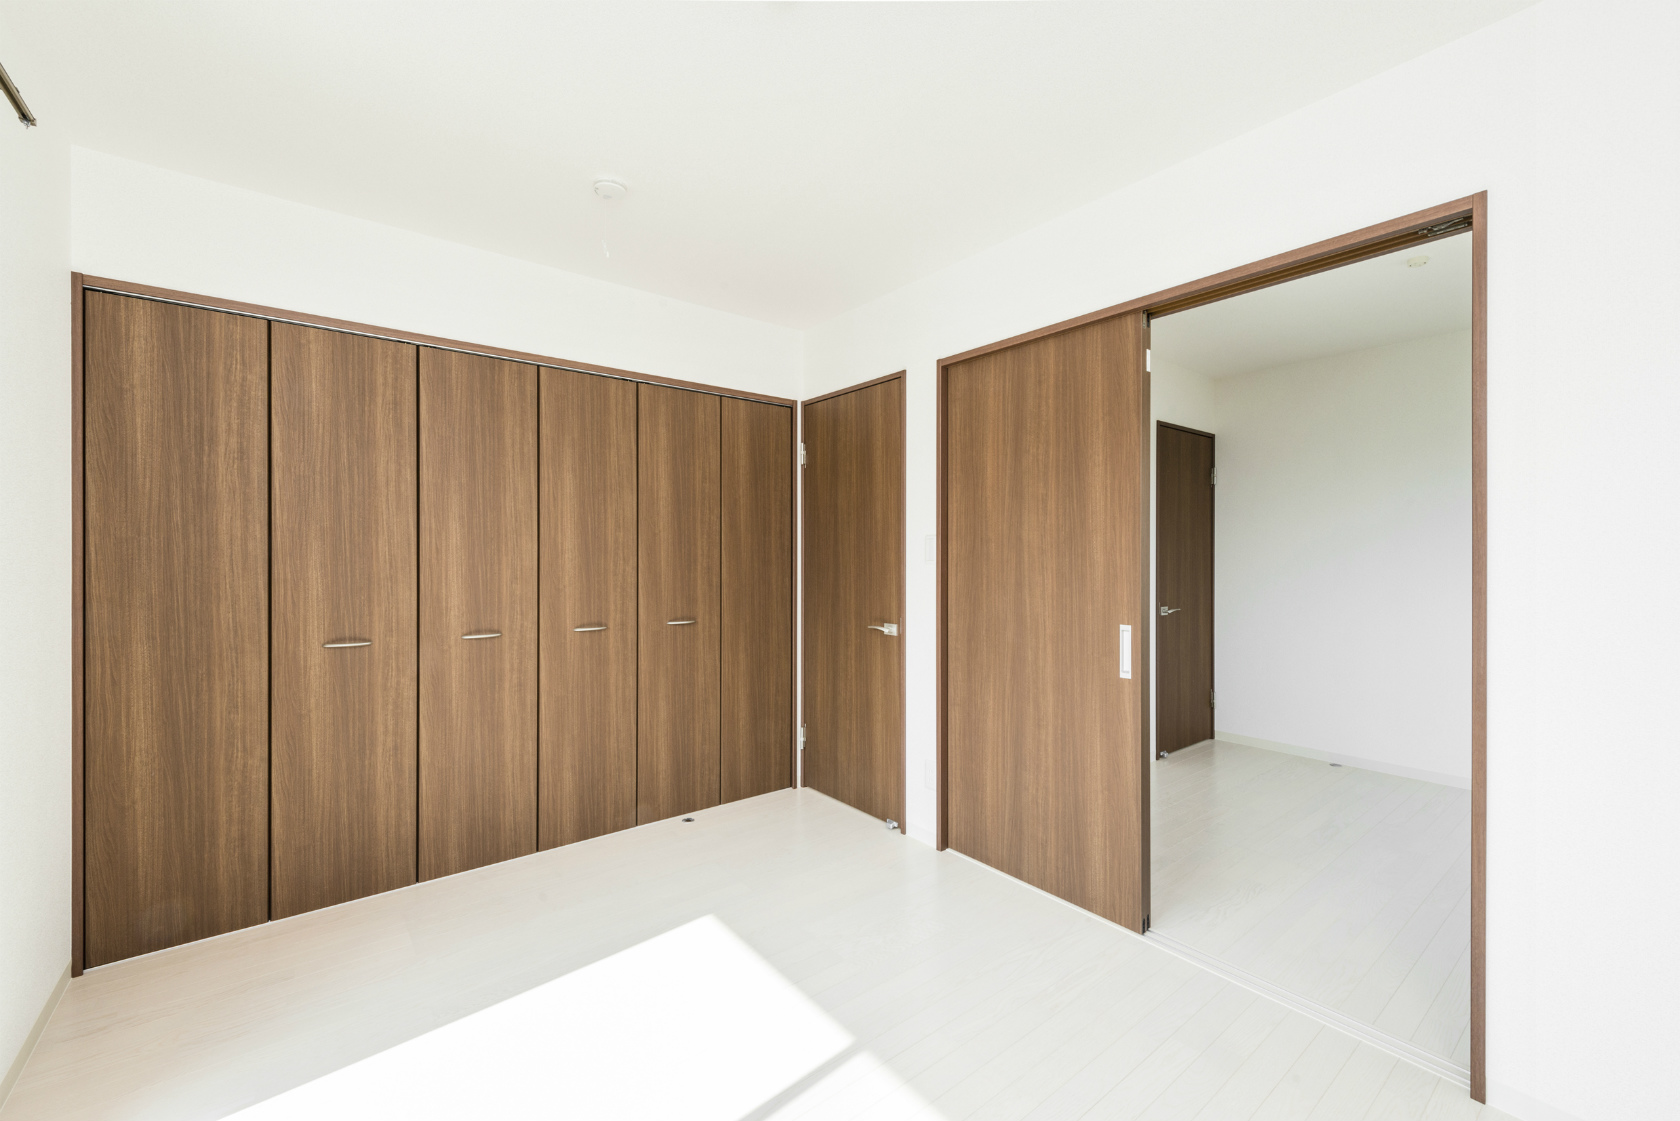 名古屋市北区の戸建賃貸住宅の収納たっぷりの木目の建具の洋室